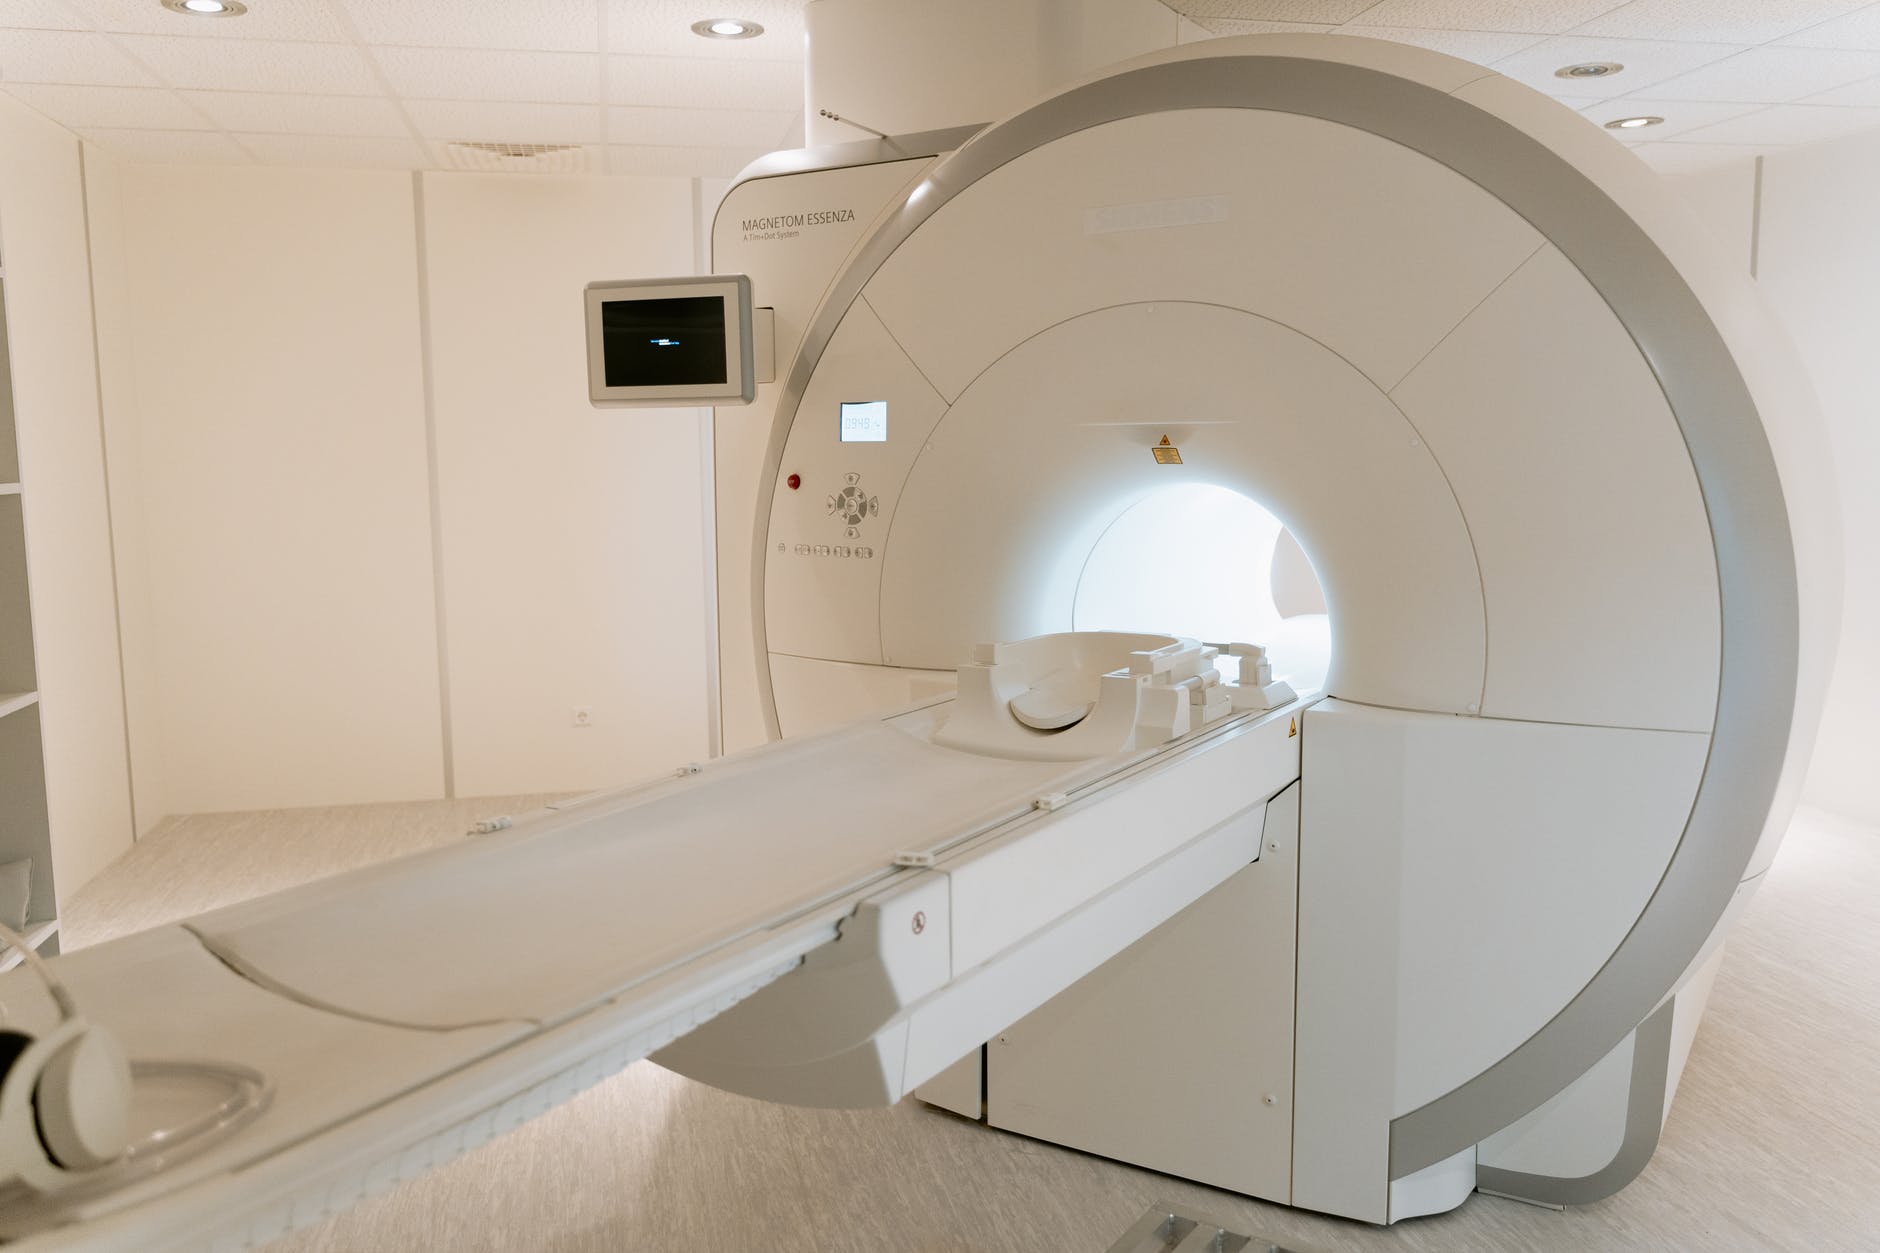 Zervikale MRT und Tumor: Diagnosewerkzeug